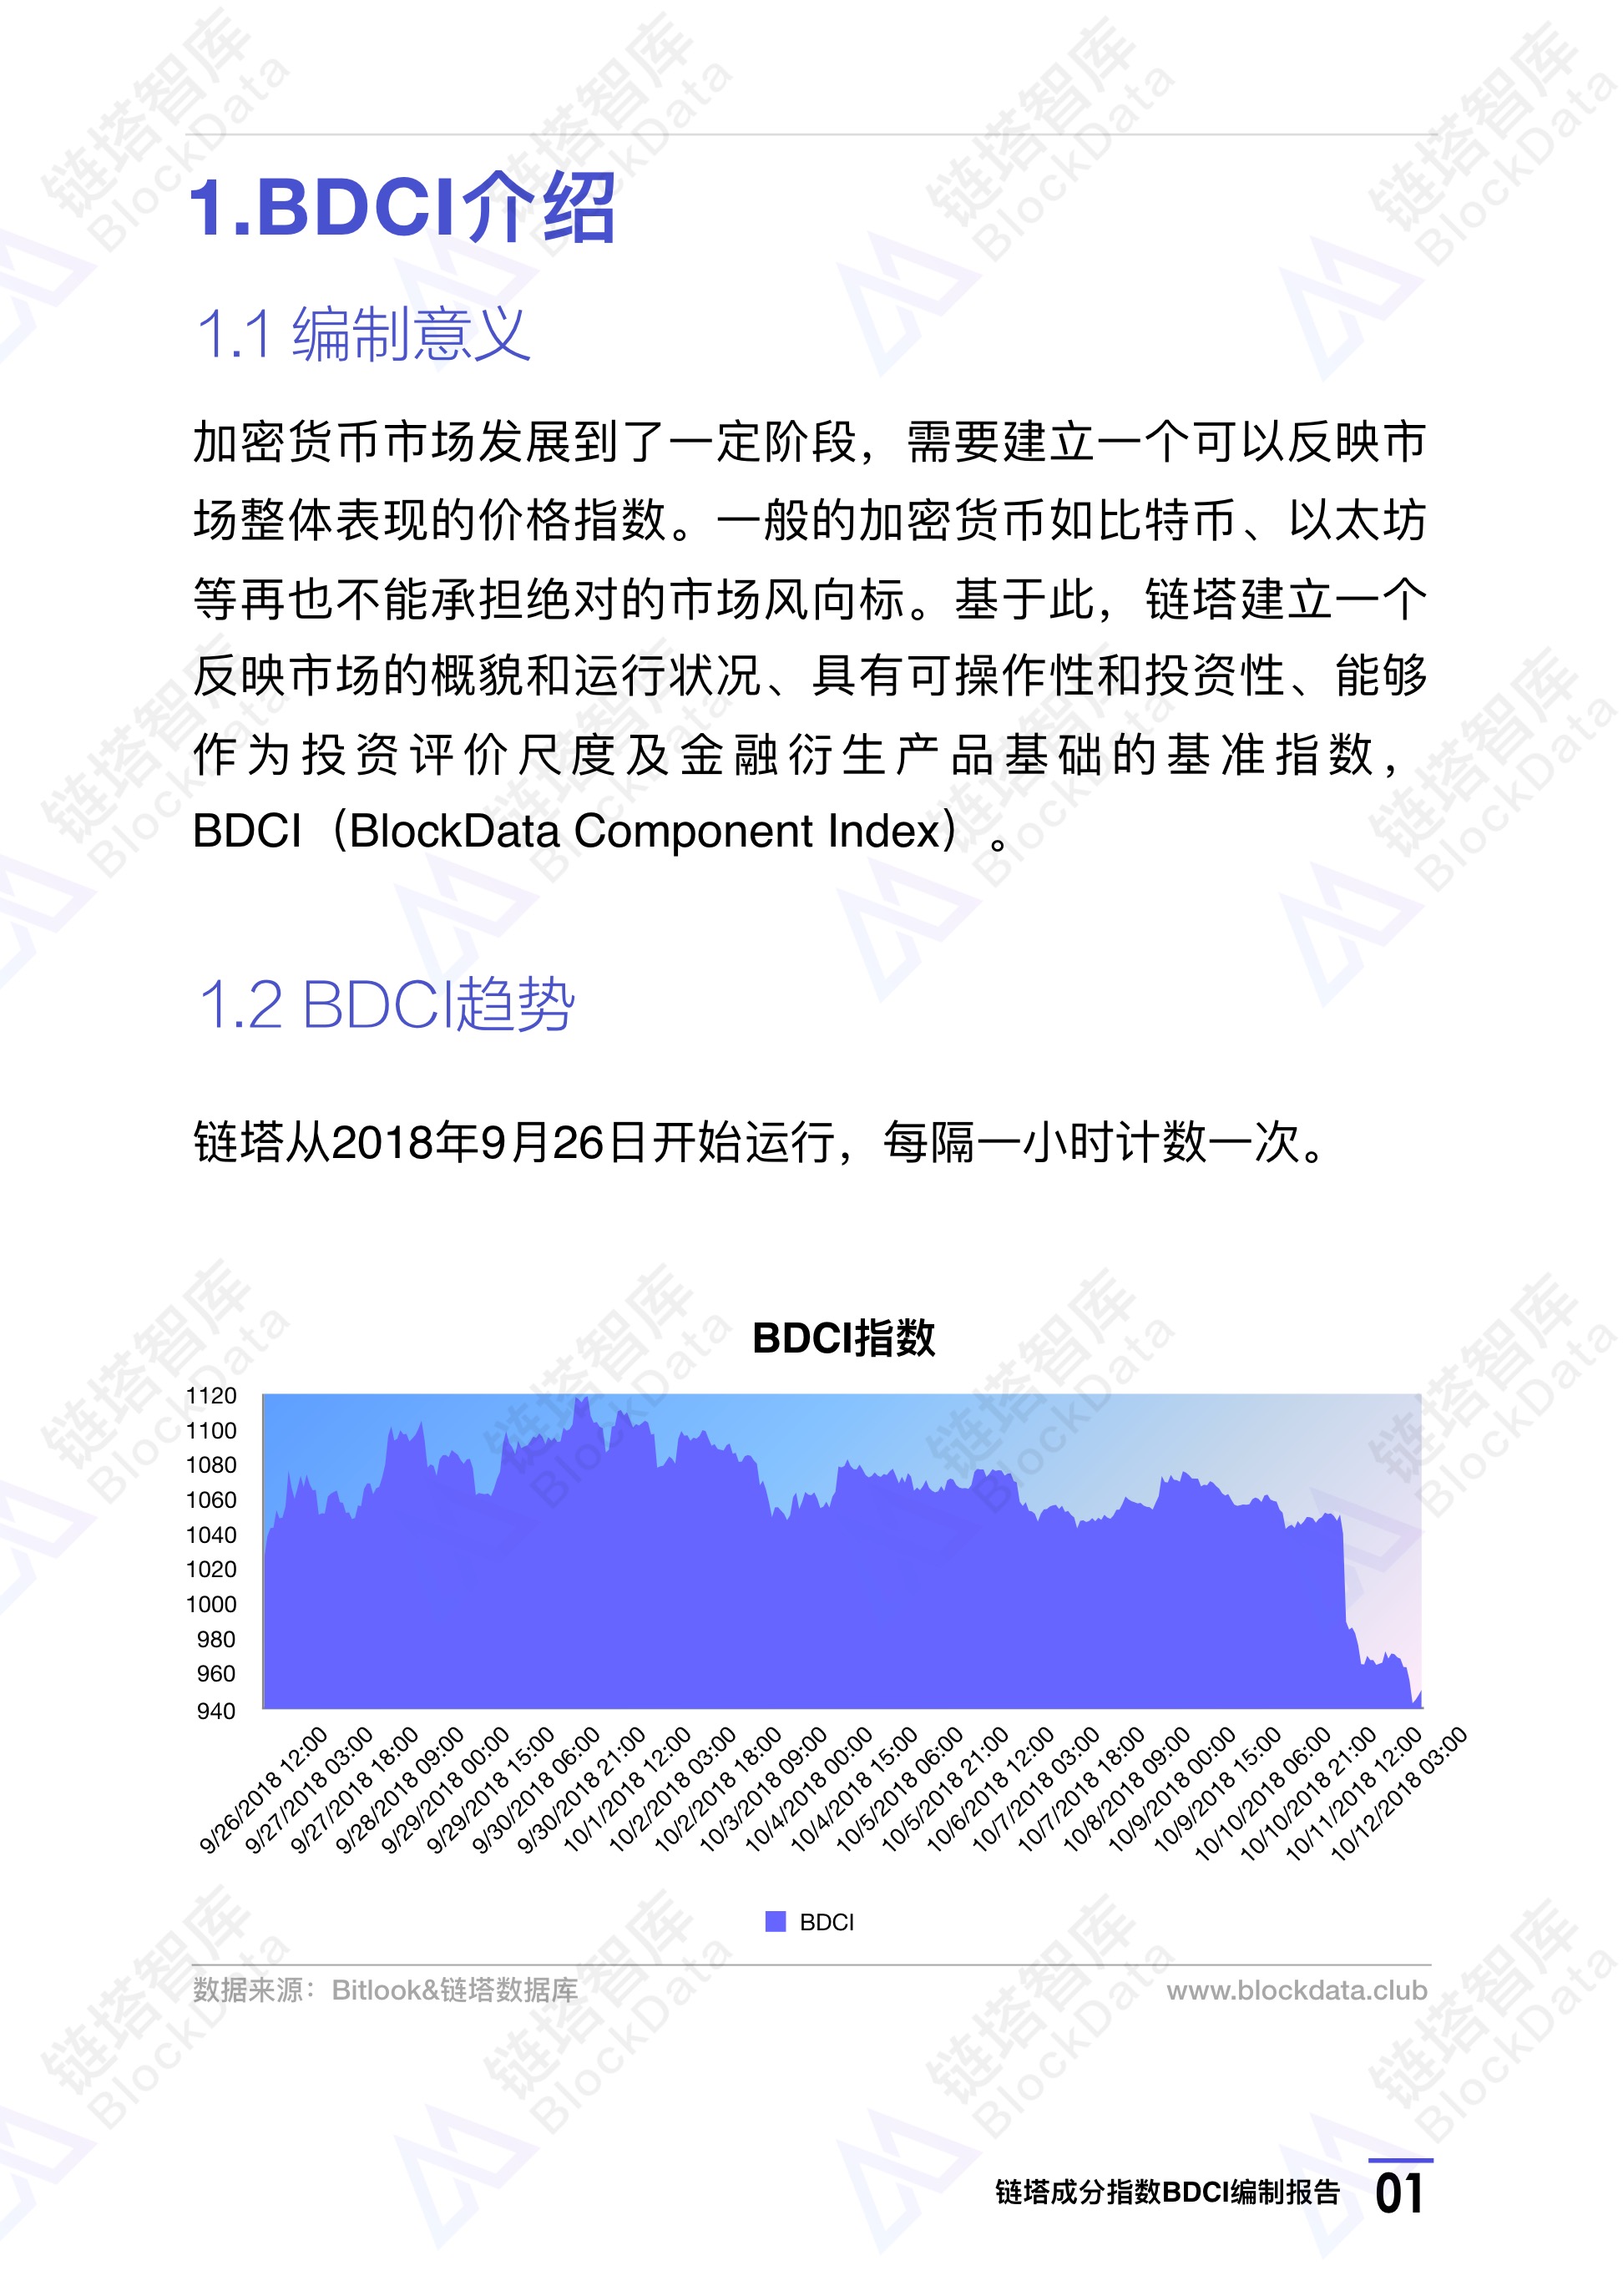 链塔成分指数BDCI：反映加密货币市场运行情况的基准指数 | 链塔智库